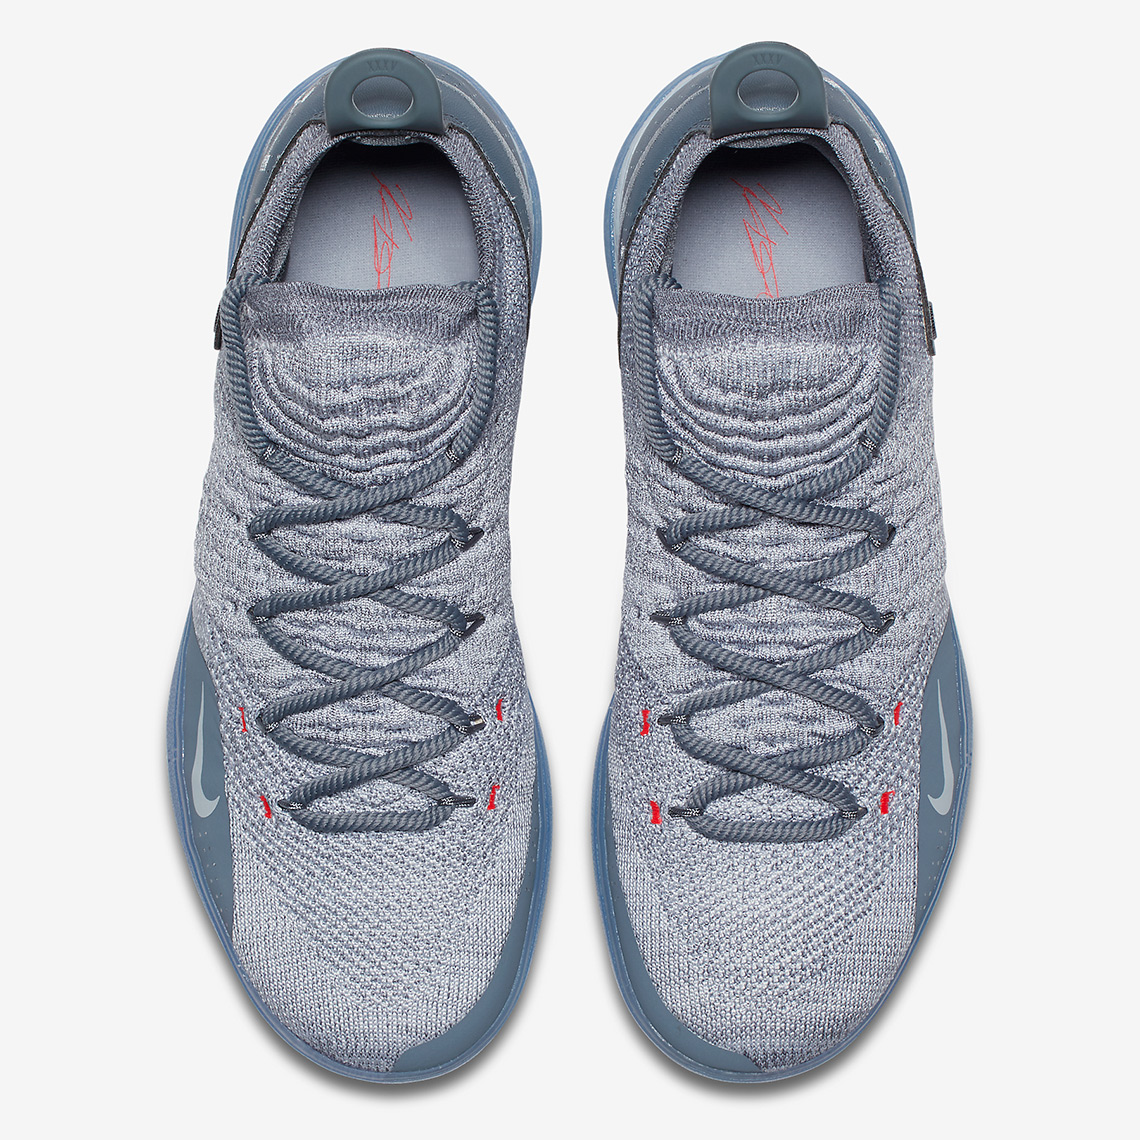 Nike Kd 11 Cool Grey Ao2604 002 2